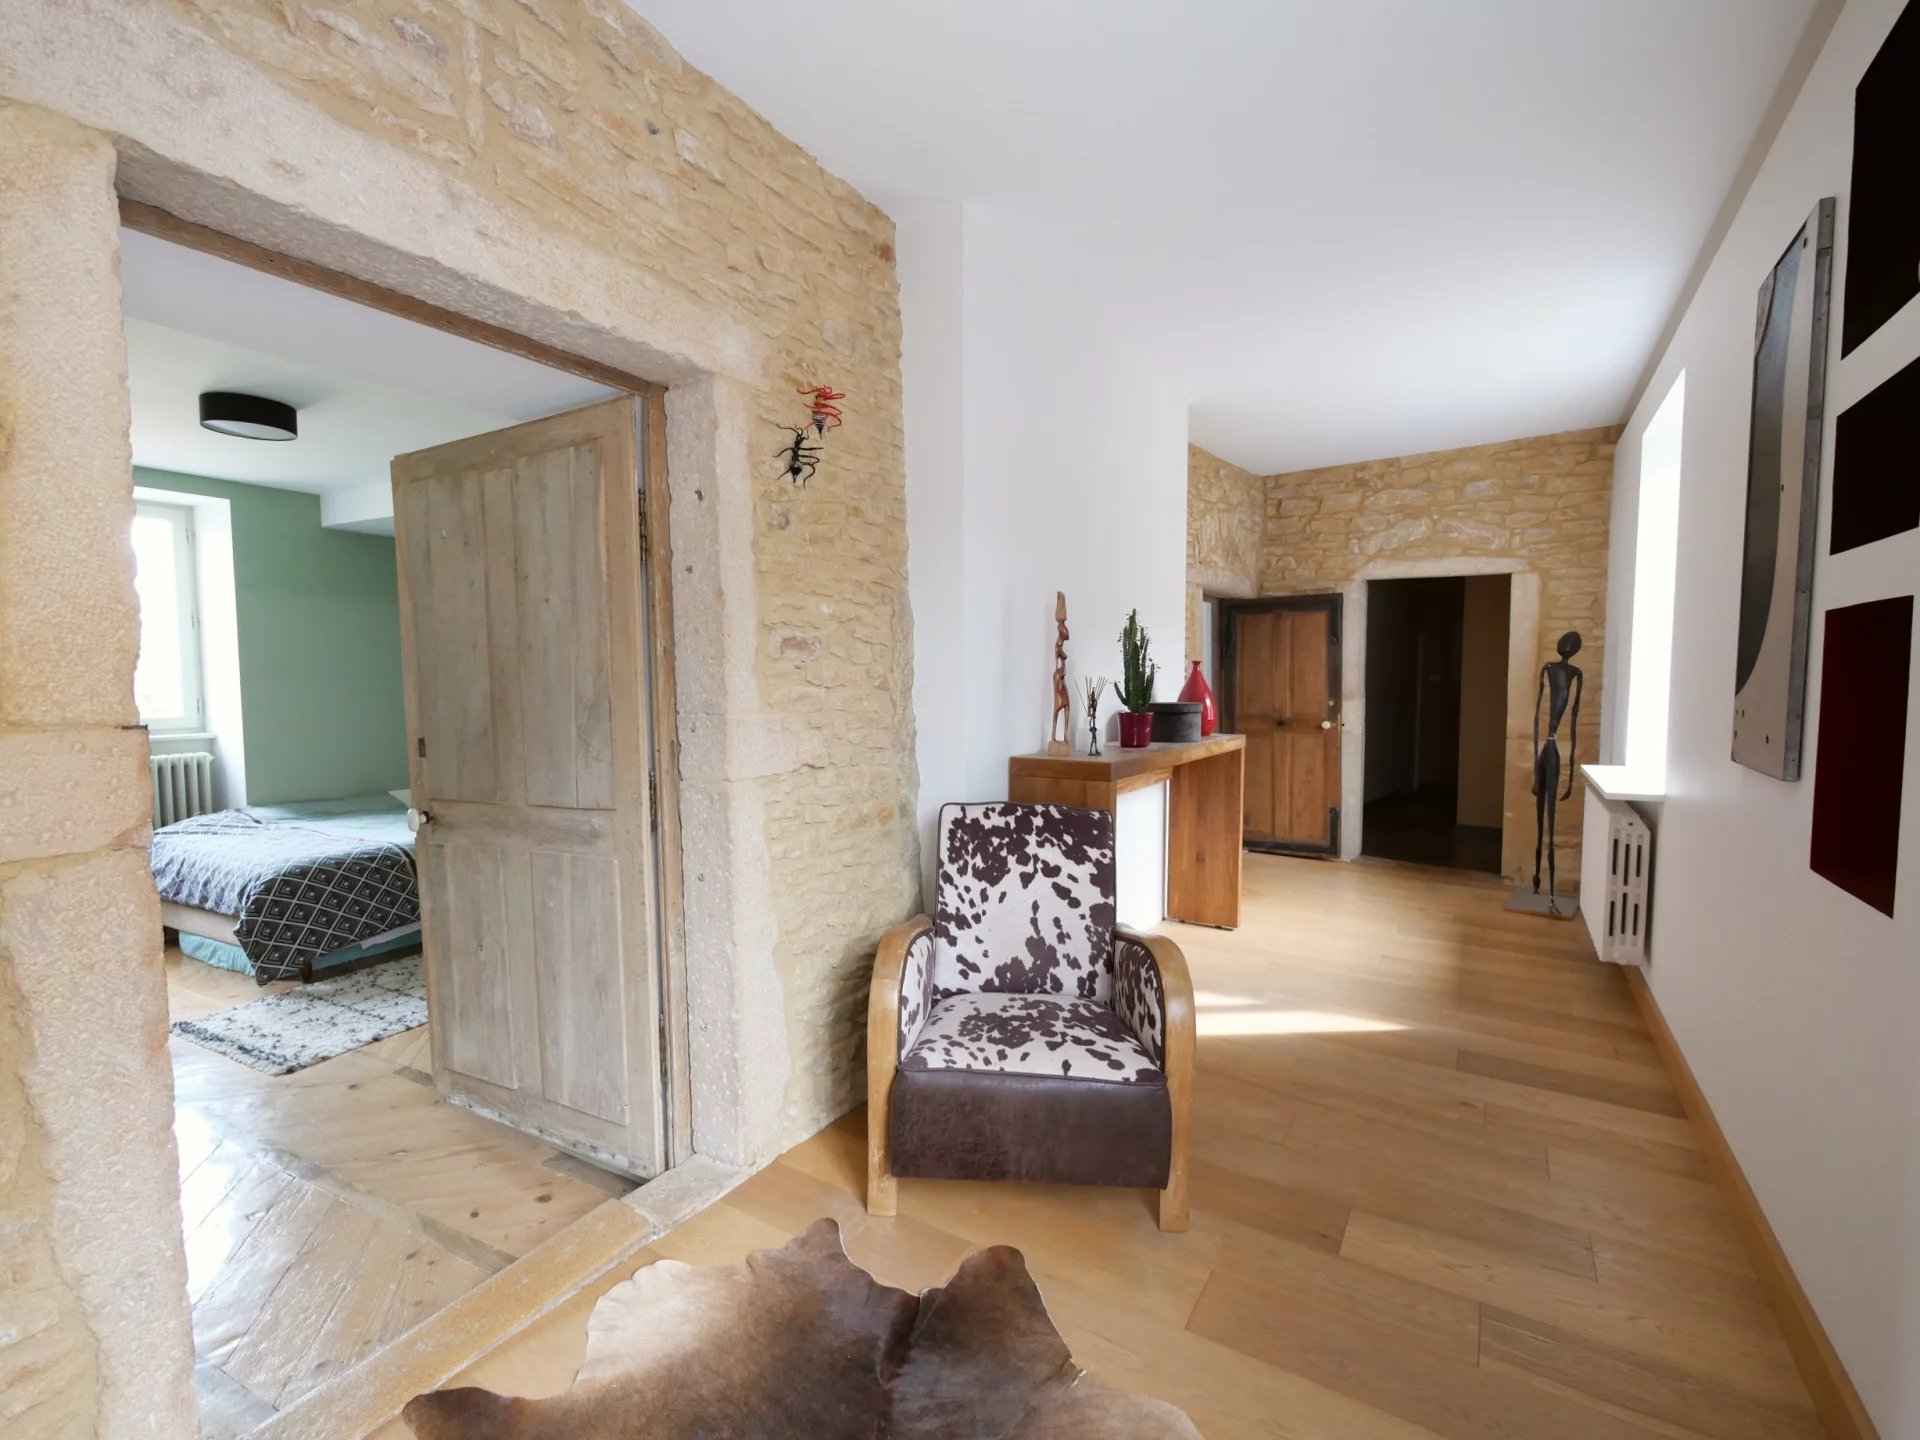 SOUS COMPROMIS
A 10 mn de Mâcon et proche de la gare TGV de Loché, dans la jolie commune de Vinzelles, découvrez cette maison de charme entièrement restaurée avec des prestations de qualité.
Cette belle bâtisse en pierre, élevée sur caves, dispose d'une surface habitable de 190 m². Elle se compose d'une belle entrée desservant un premier salon plein de charme avec poêle à bois, d'une superbe pièce à vivre de 57 m² avec cuisine entièrement équipée, espace salon et salle à manger, d'un cellier, d'une buanderie aménagée, d'un très beau dégagement desservant trois chambres et d'une salle de bains. Possibilité d'agrandir l'espace habitable avec des combles de 90 m² parfaitement aménageables.
Côté extérieur, la galerie Mâconnaise s'ouvre sur une charmante cour intérieure paisible et discrète avec de nombreuses dépendances permettant de belles possibilités d'évolution. 
Cette maison familiale bénéficie également d'un terrain de  455 m², situé juste en face de la propriété. 
Coup de c?ur assuré pour ce bien de caractère authentique mêlant avec merveille le cachet de l'ancien et le confort du contemporain. 
NOUVEAU DPE : Montant théorique de la consommation annuelle pour les usages recensés : entre 2340 euros et 3230 euros. Année de référence 2021.
Les informations sur les risques auxquels ce bien est exposé sont disponibles sur le site Géorisques : www.georisques.gouv.fr 
Honoraires à charge vendeurs.